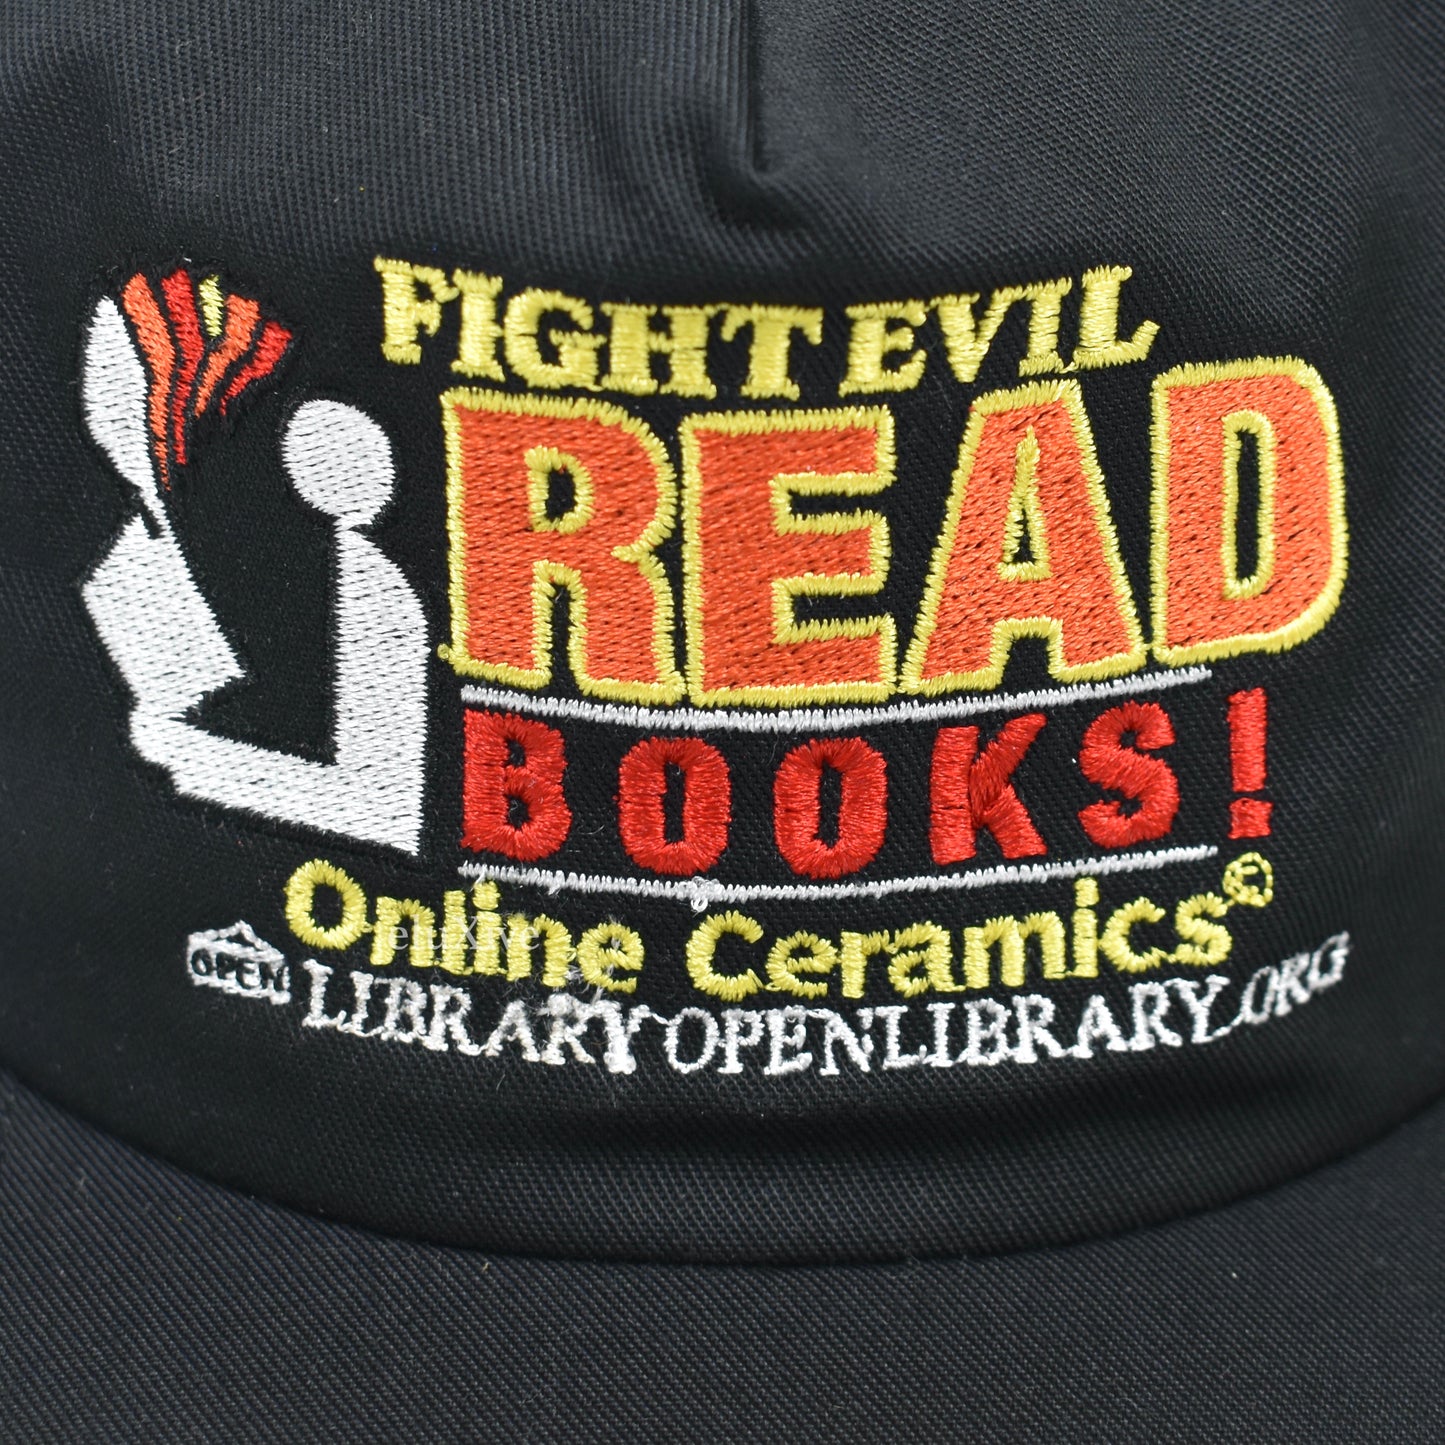 Online Ceramics - Read Books Logo Hat (Black)